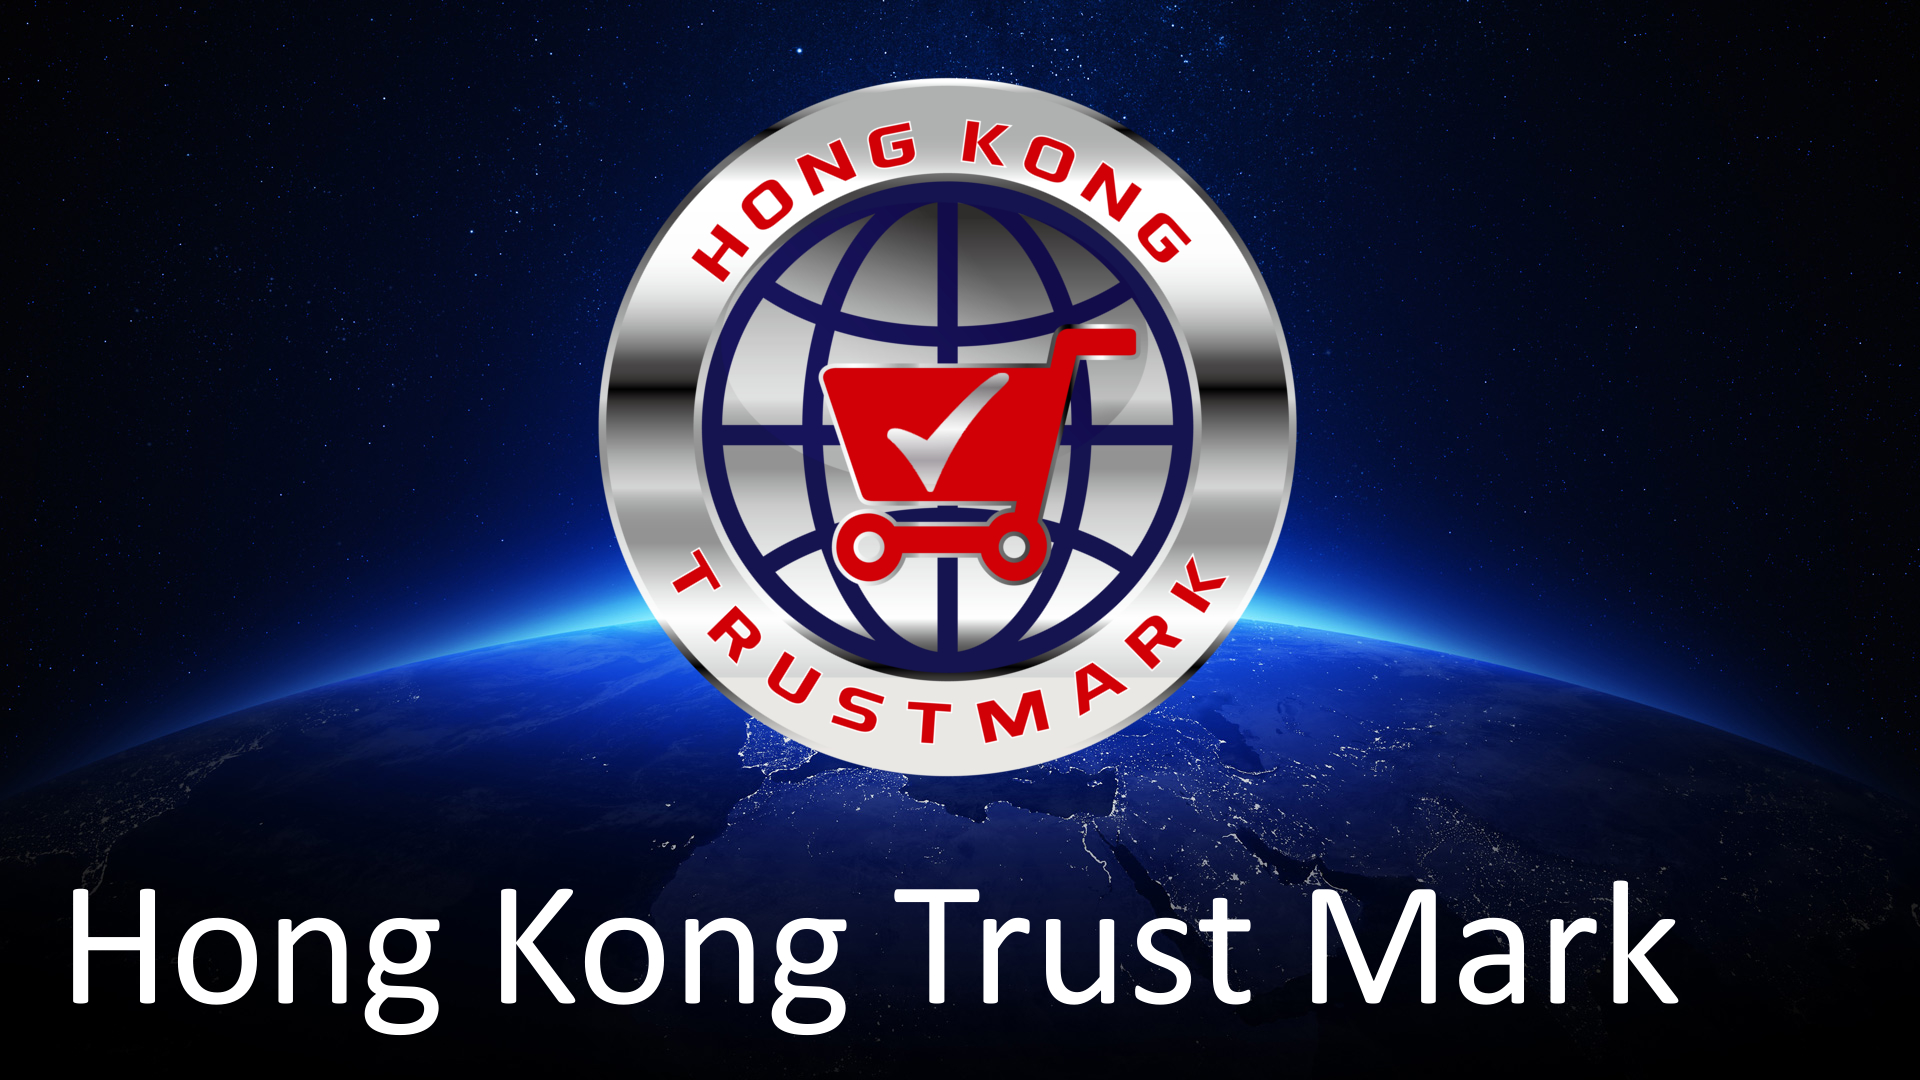 Hong Kong Trust Mark"